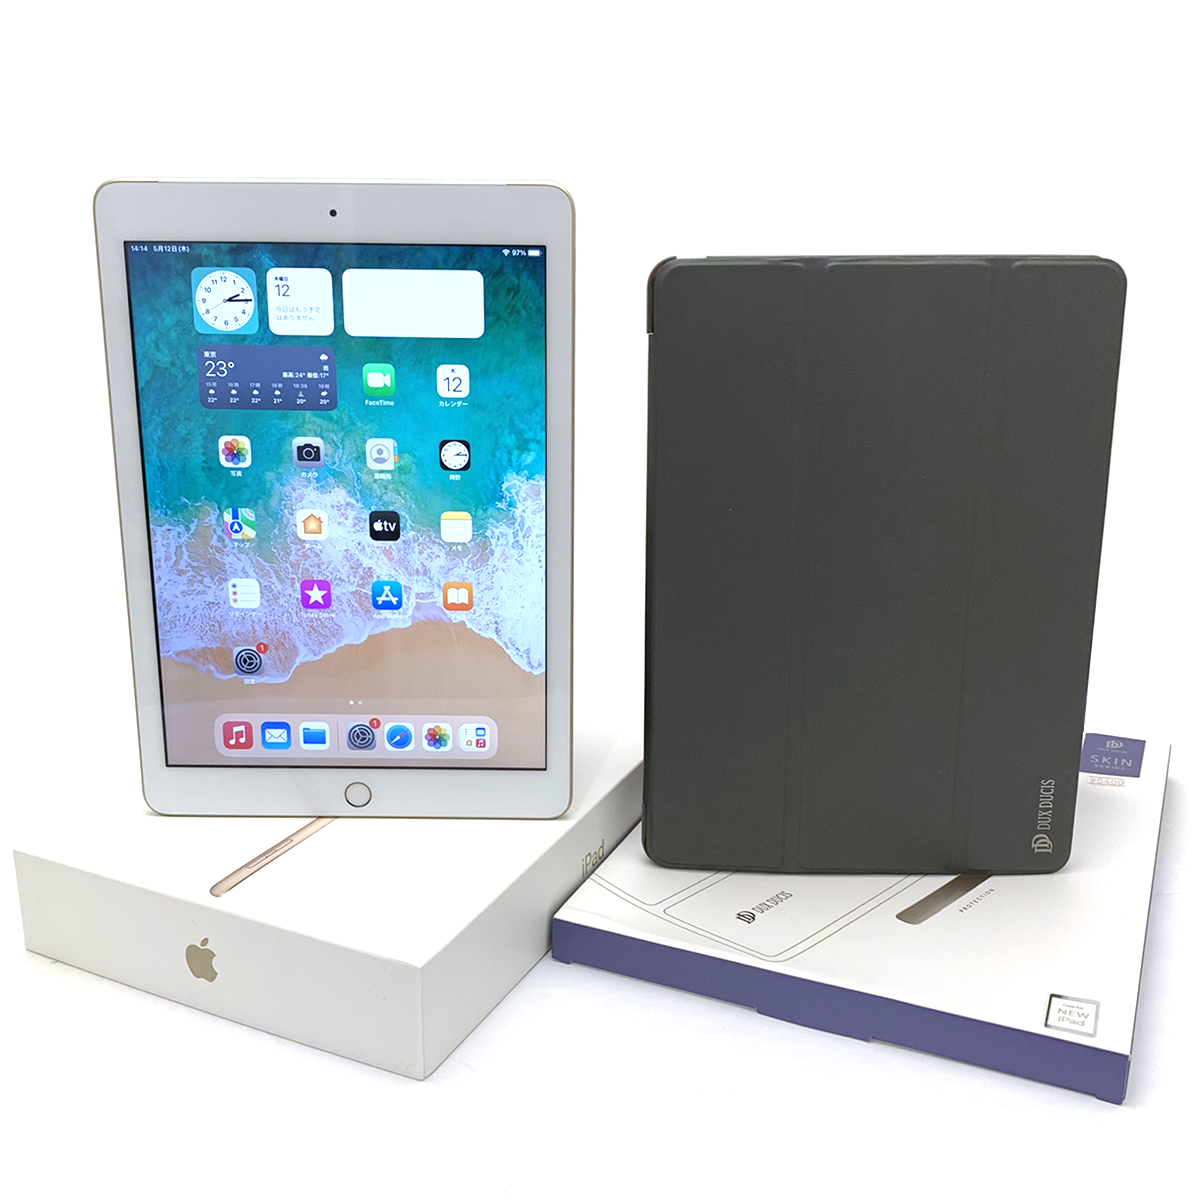 アップル(Apple) iPad 第5世代 Wi-Fi+Cellular MPG42J/A 32GB ゴールド 9.7インチ